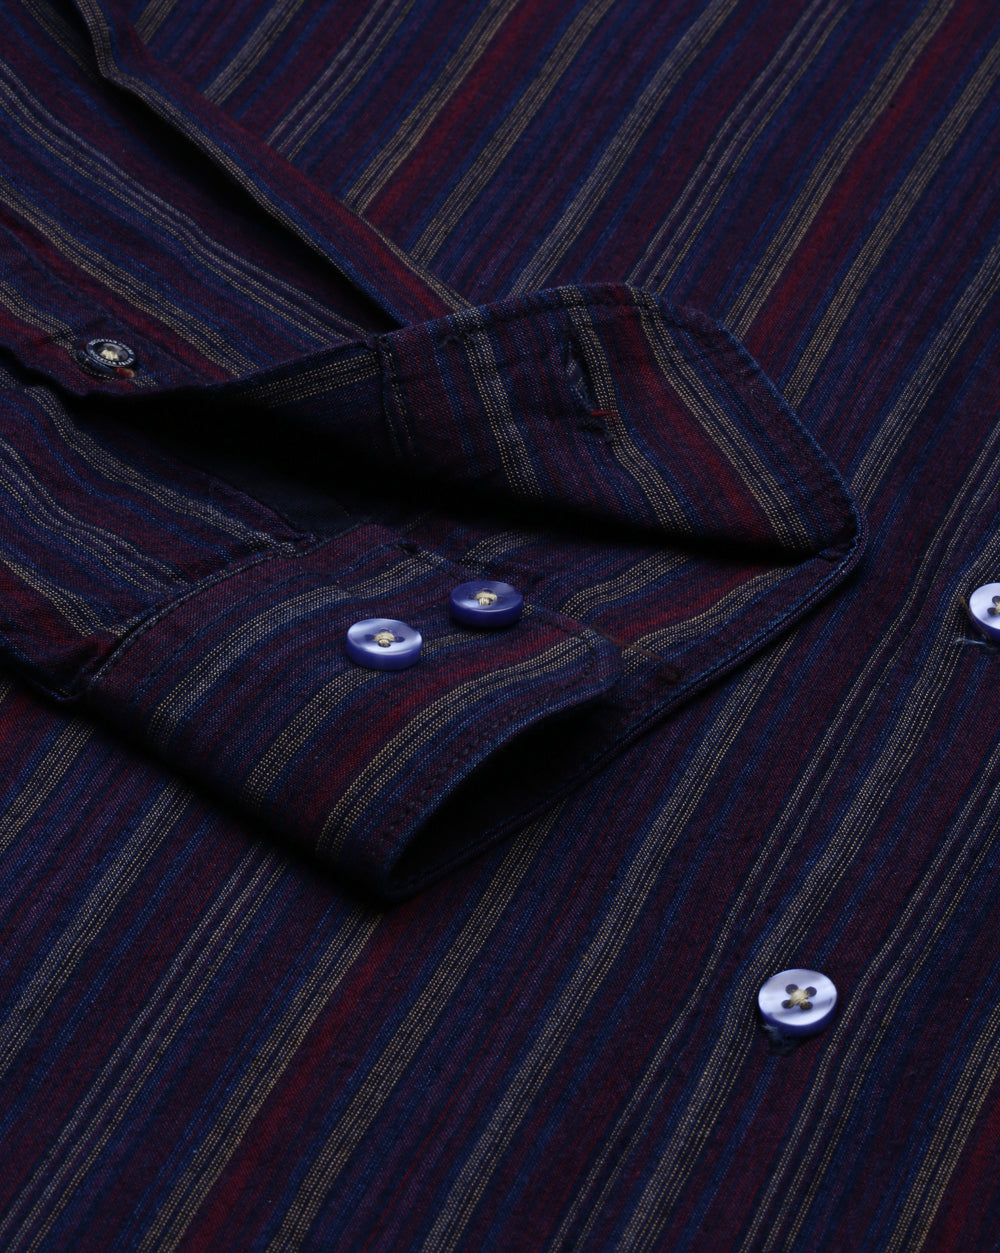 Multi-Colour Stripes Shirt